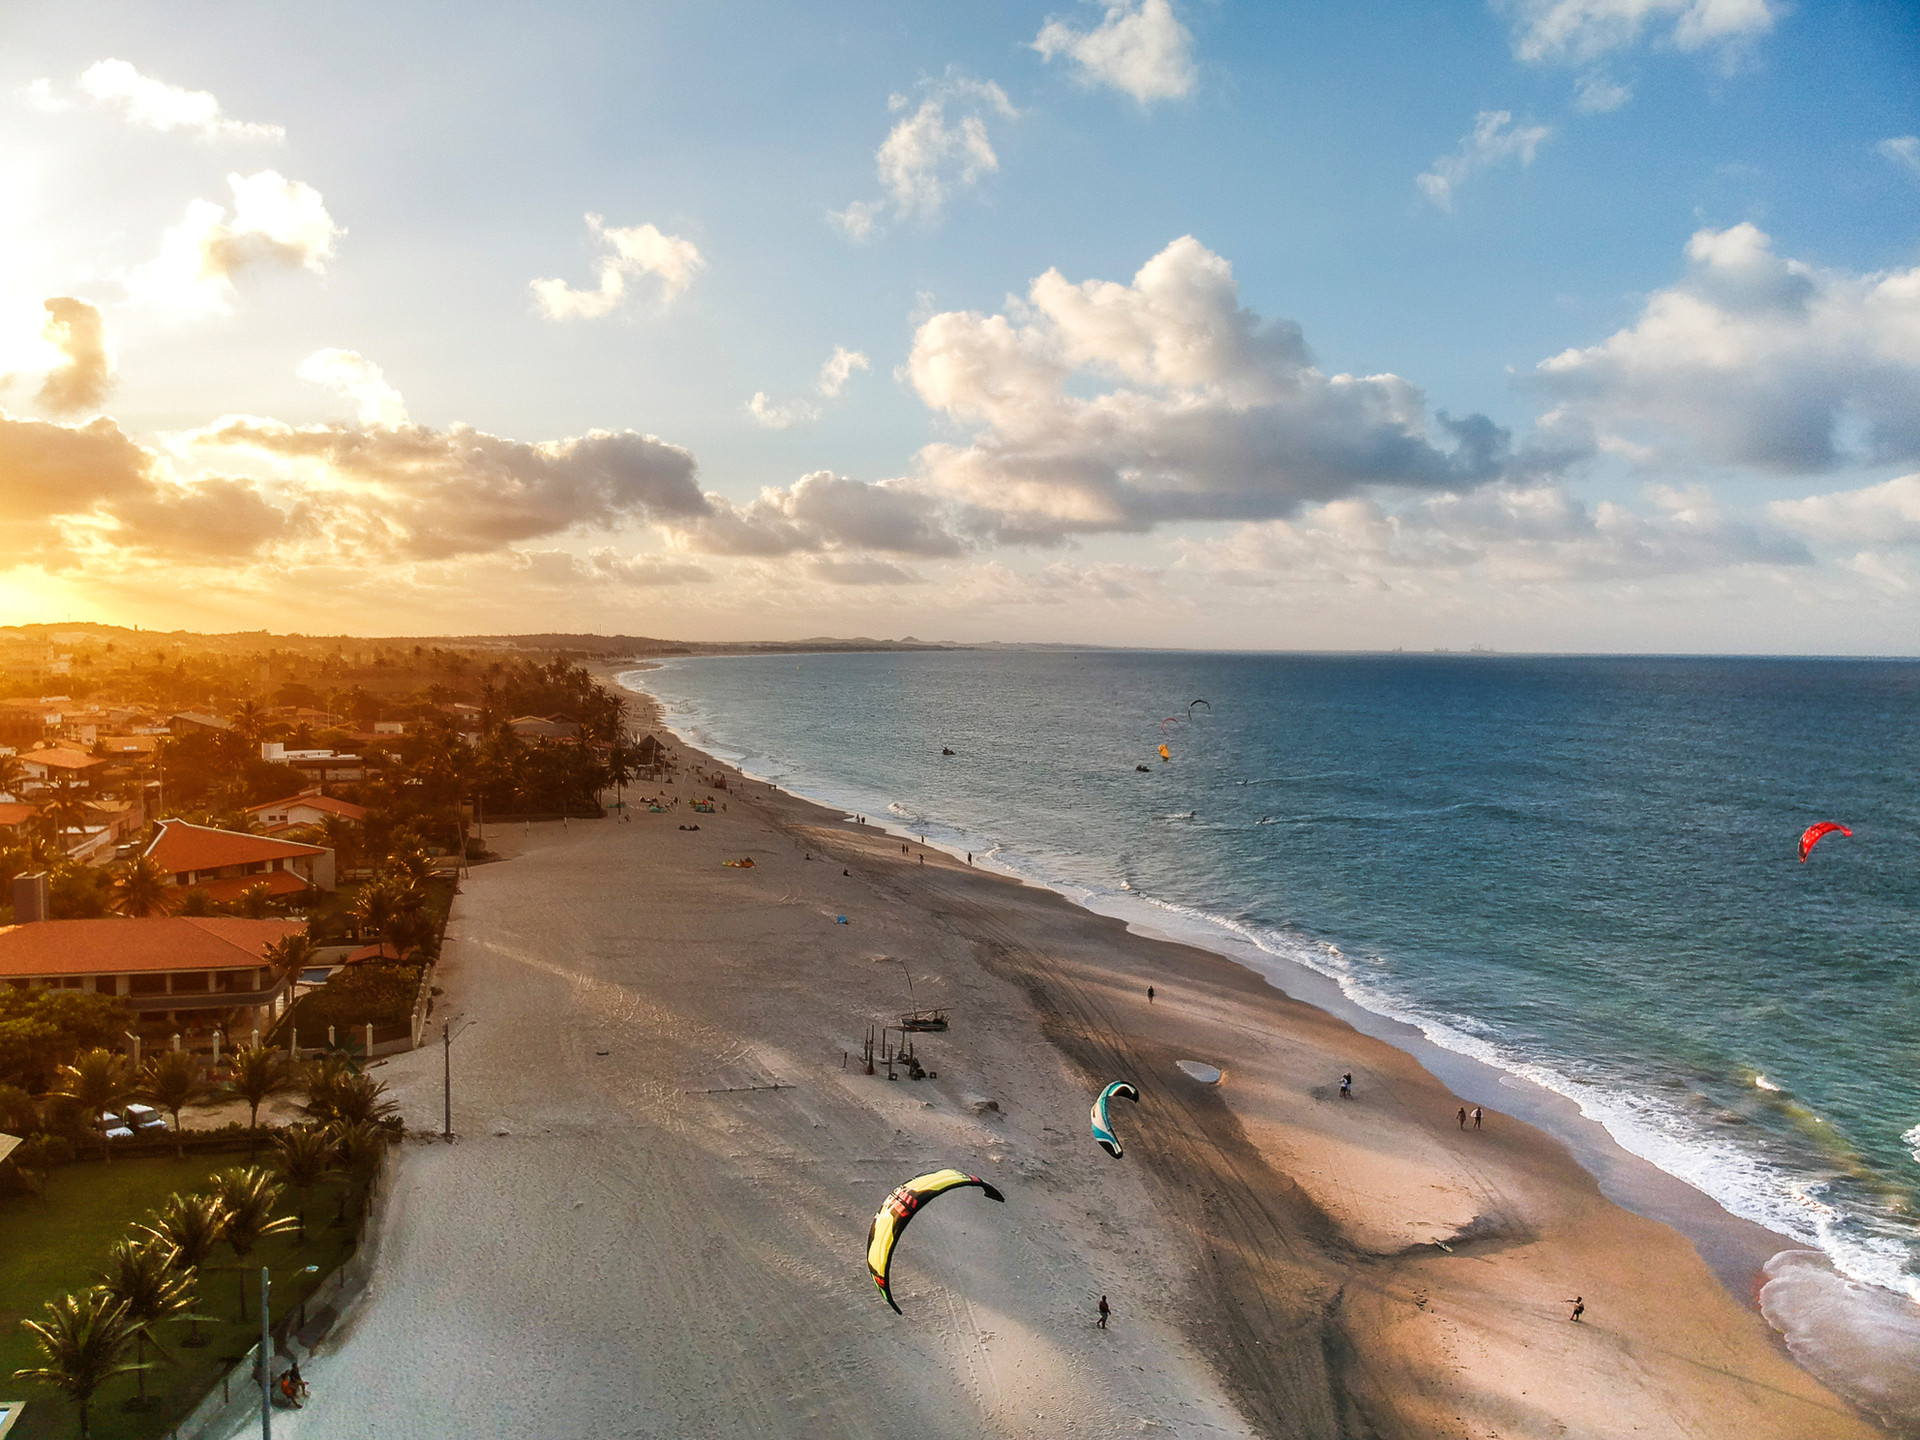 O que fazer em Fortaleza: praias, passeios, hotéis e dicas